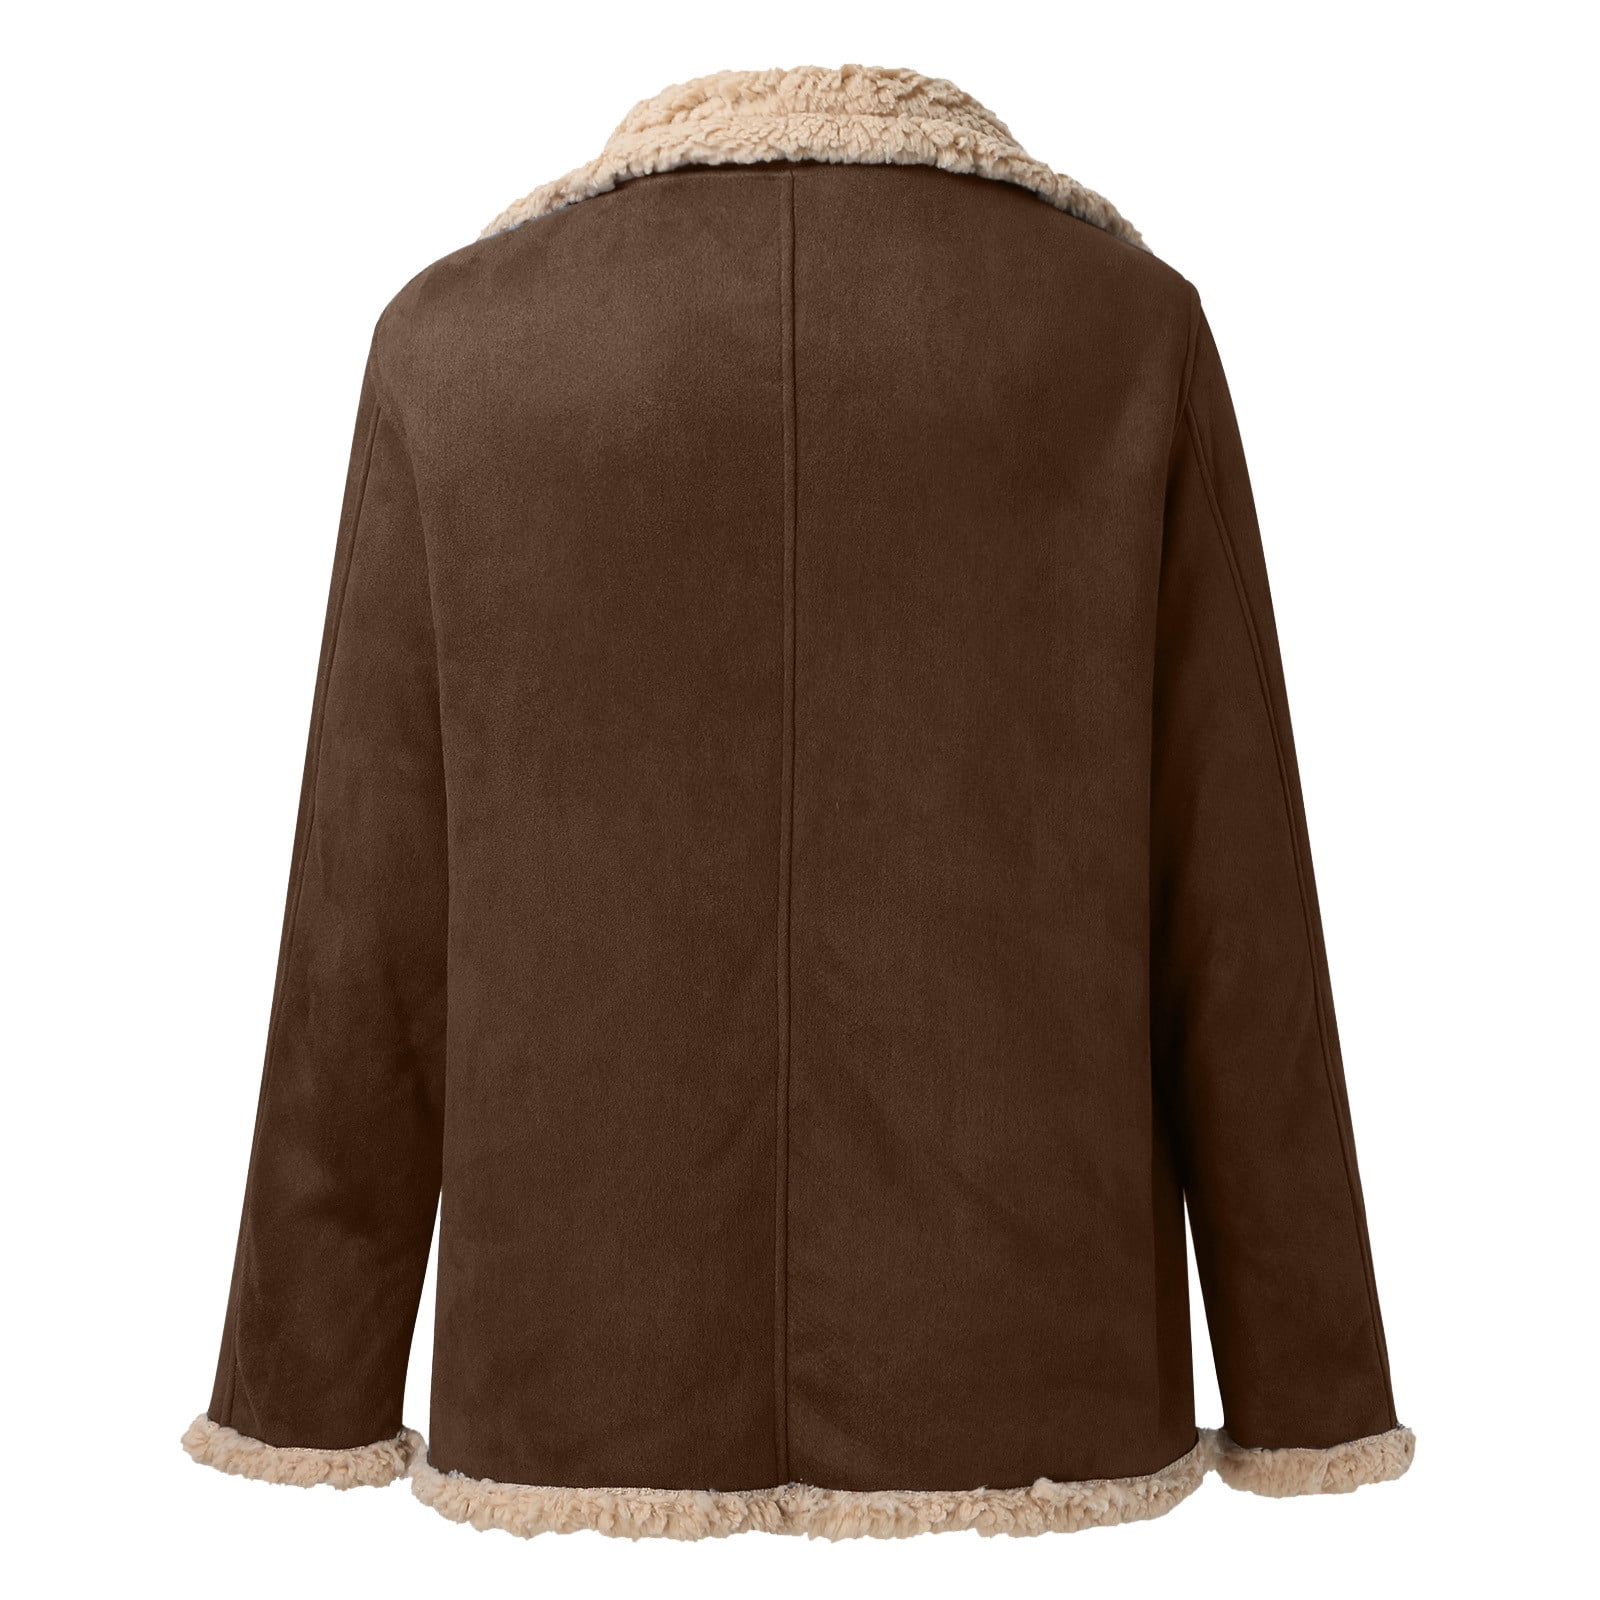 LEEy-world Mens Winter Coats Men'S Jacket Casual Zip Up Windbreaker Jackets  Outwear Winter Padded Coats Khaki,XXL 